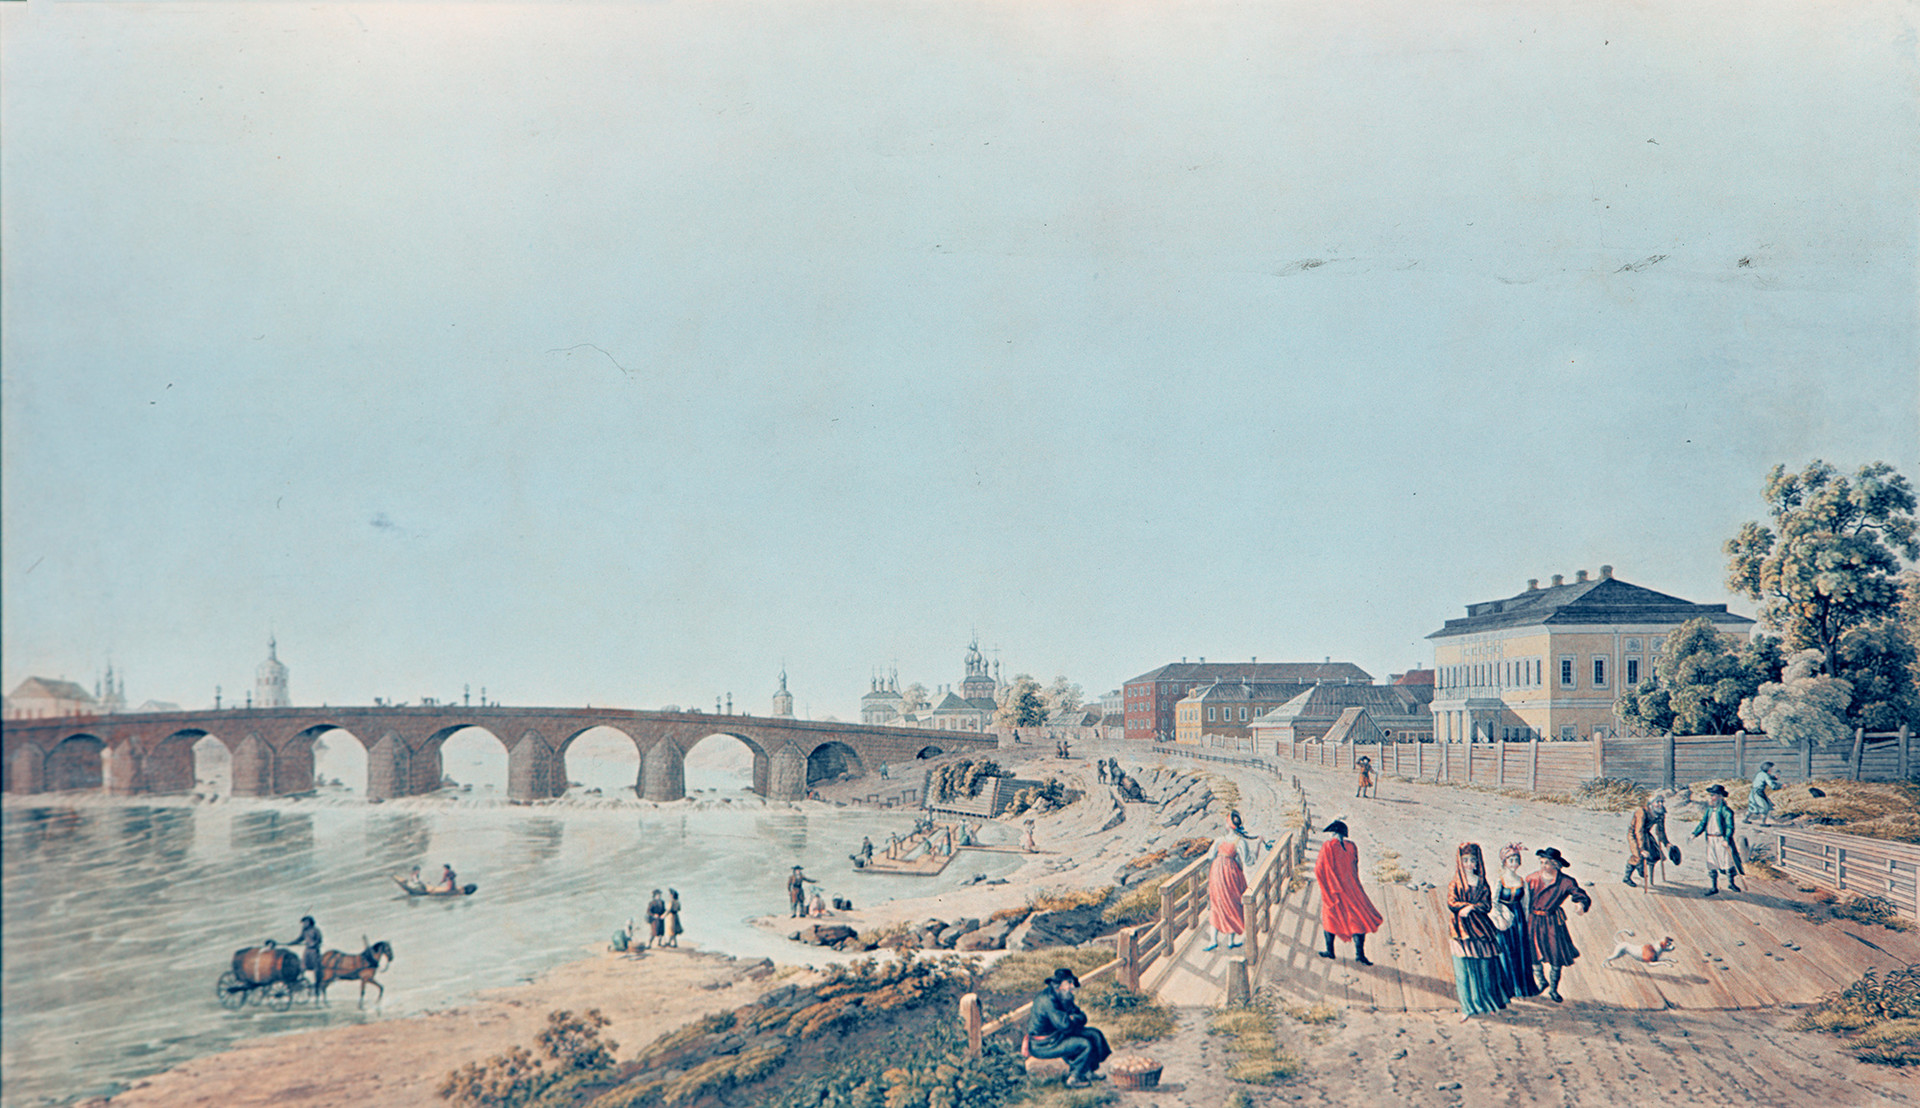 ‘Vista al puente Bolshói Kámenni y sus alrededores’ (1796), obra de Gérard de la Barthe.